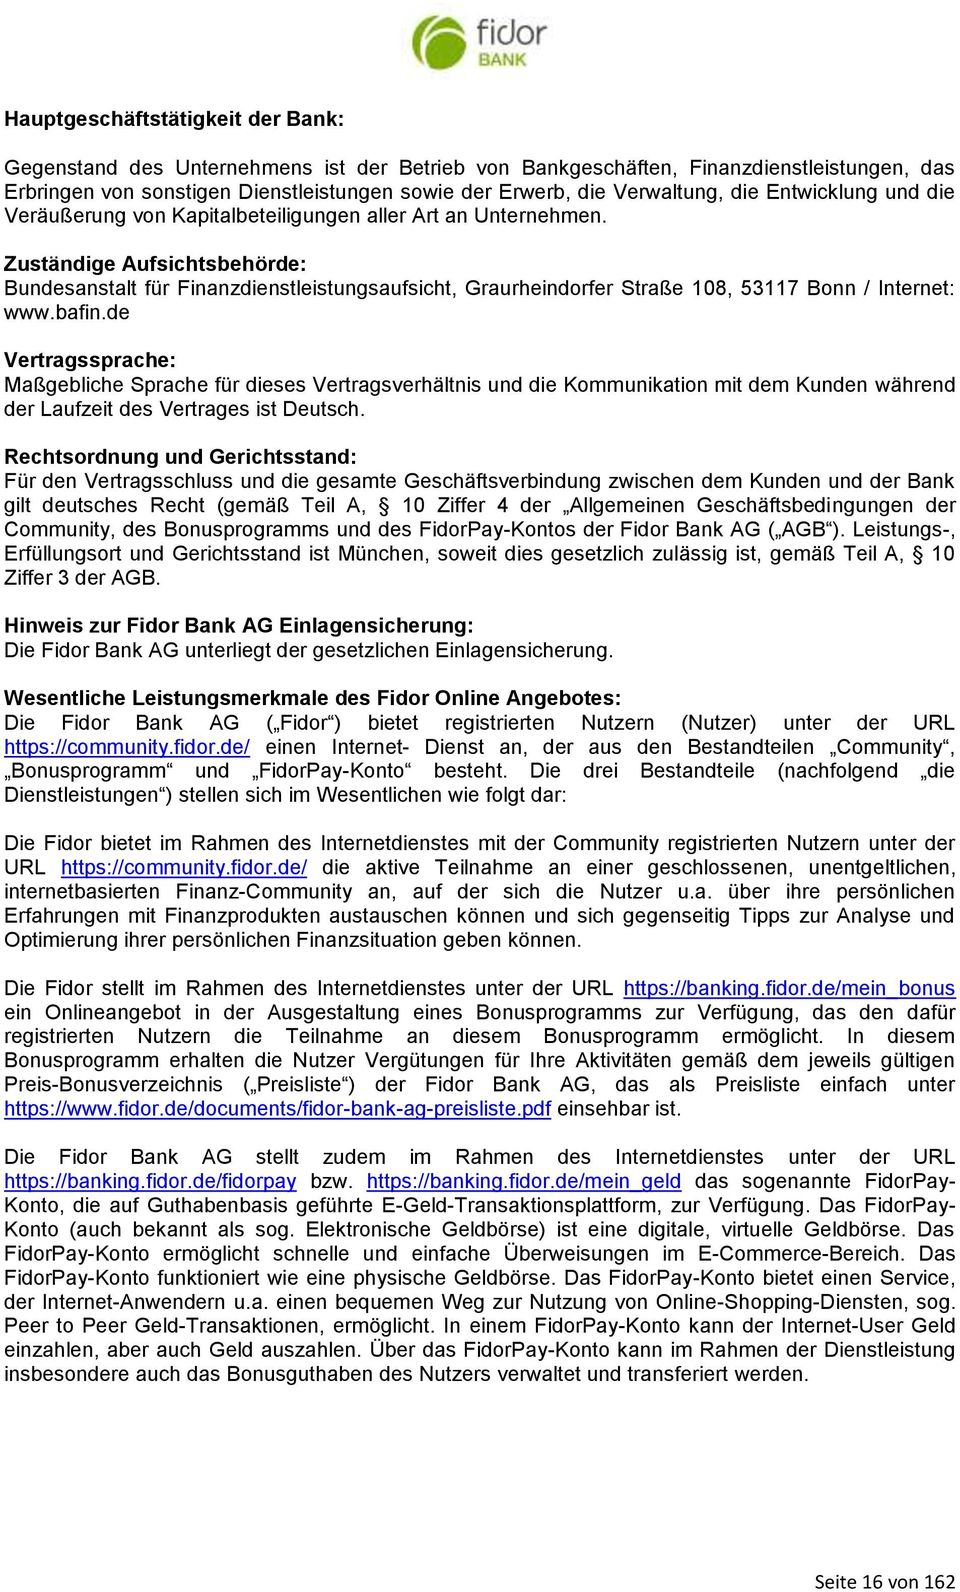 Zuständige Aufsichtsbehörde: Bundesanstalt für Finanzdienstleistungsaufsicht, Graurheindorfer Straße 108, 53117 Bonn / Internet: www.bafin.